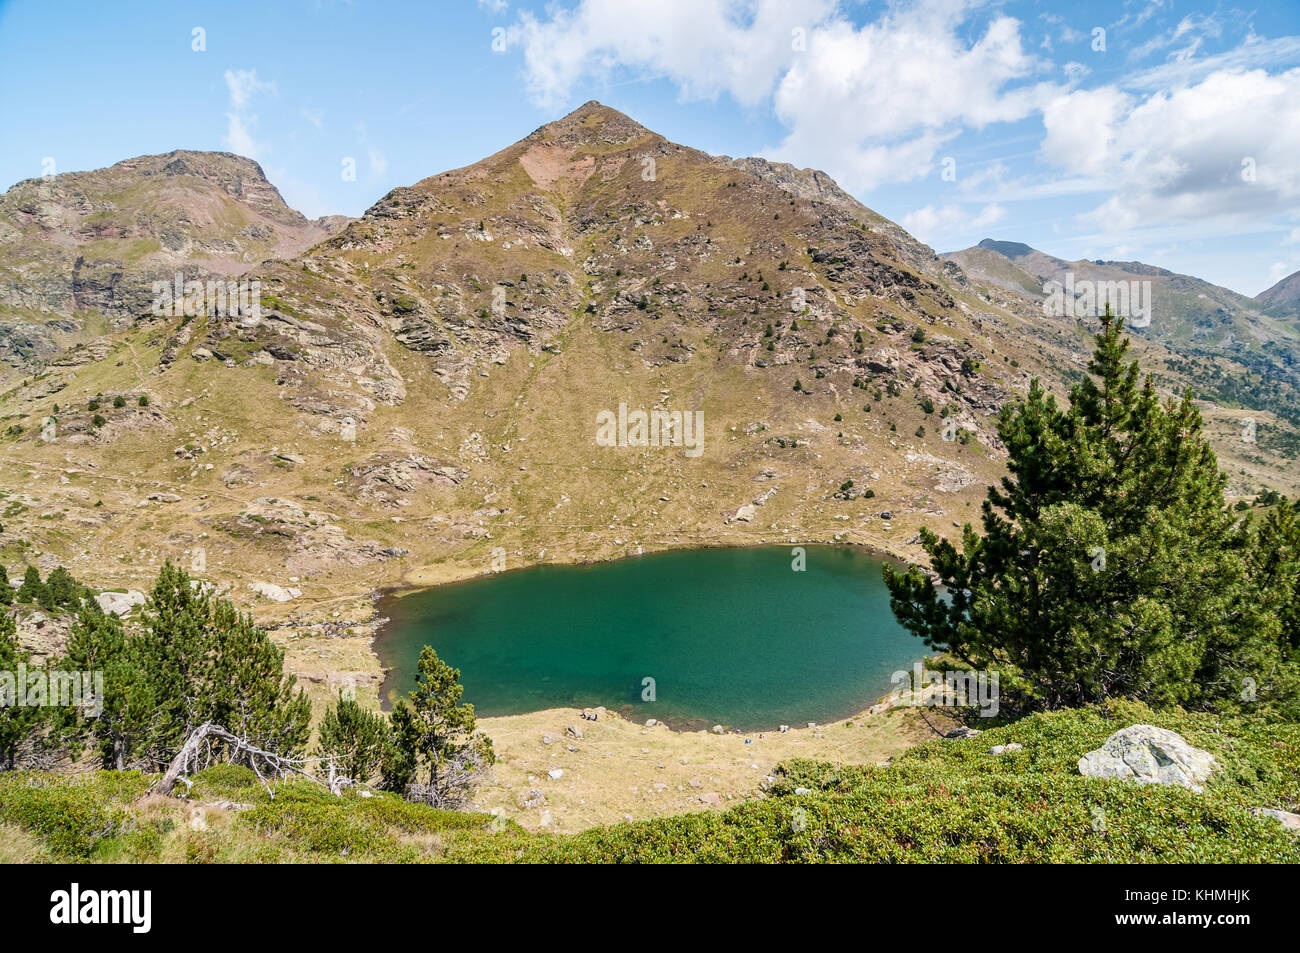 Angesichts der hohen See namens "Estany Primer" in der Nähe von Ordino mit Latschenkiefer, Tristaina, Andorra Stockfoto